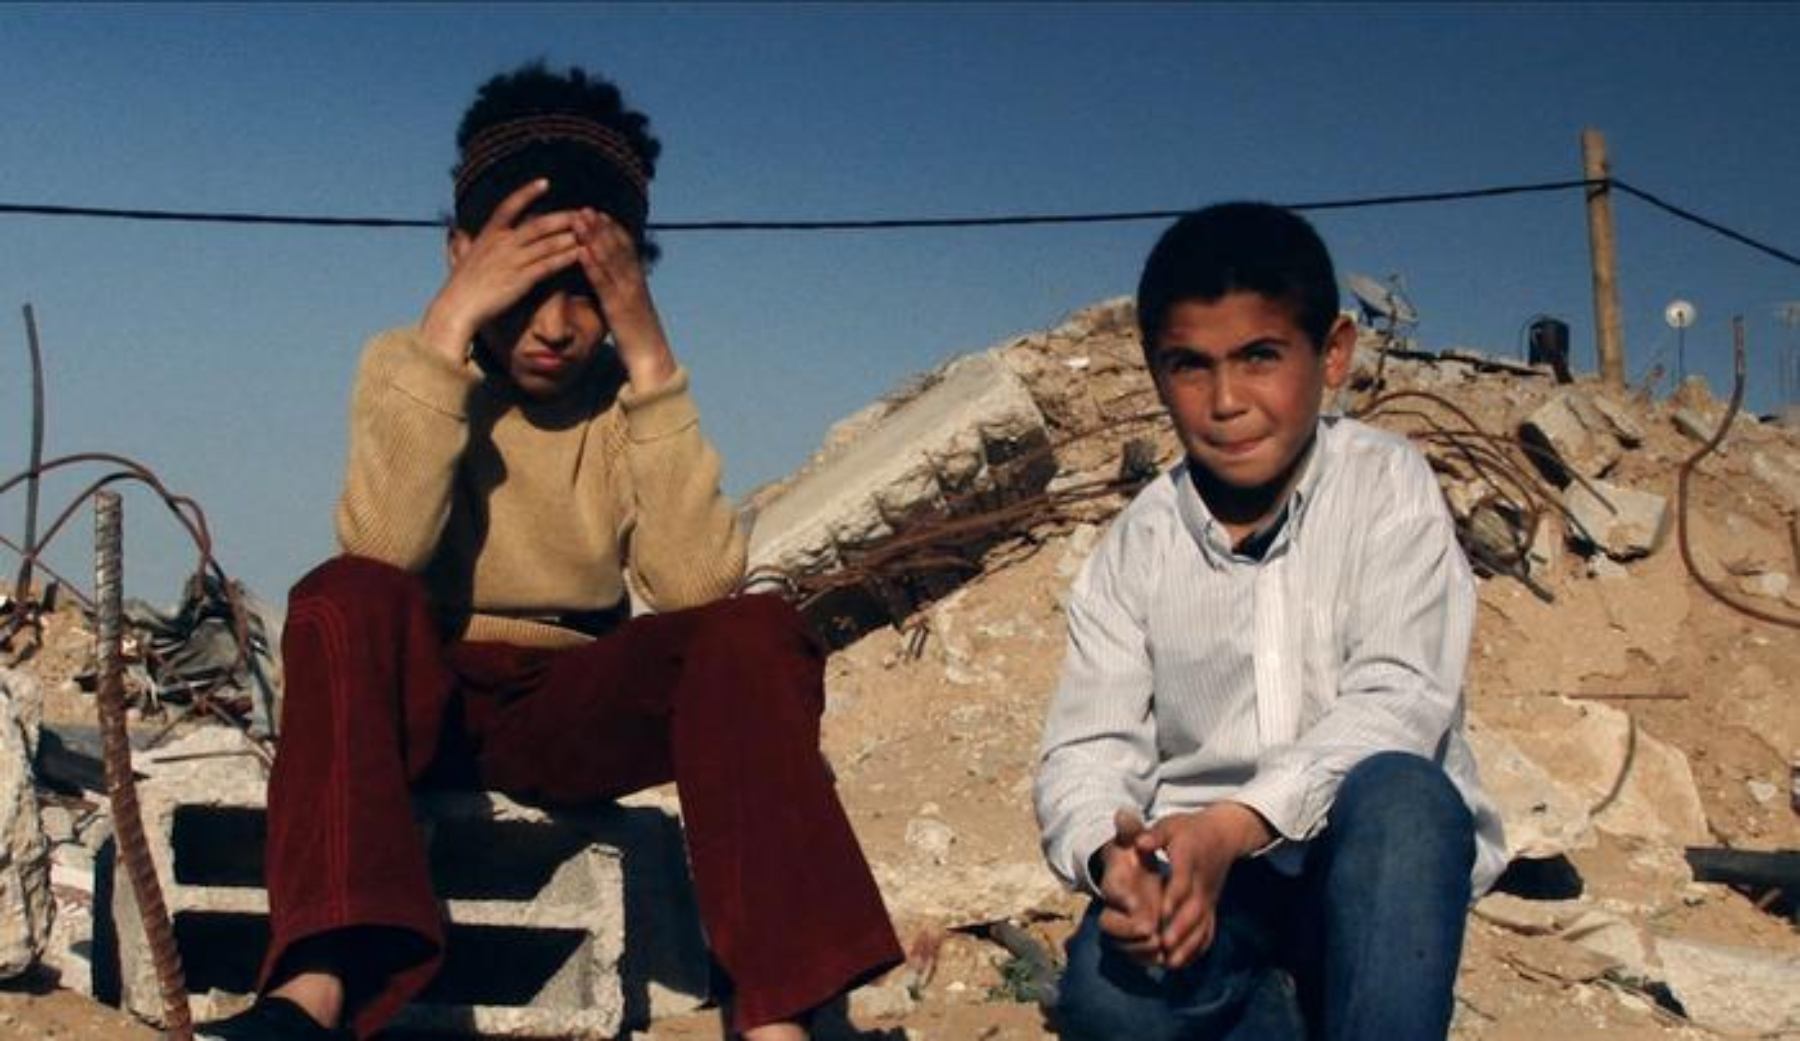 HZ destacou longas que abusam da metáfora, como 'Lemon Tree' (2008), e ressaltou produções de forte impacto emocional, como a ficção 'Paraíso Agora' (2005) e os documentários 'Morte em Gaza' (2004) e 'Nascido em Gaza' (2014)